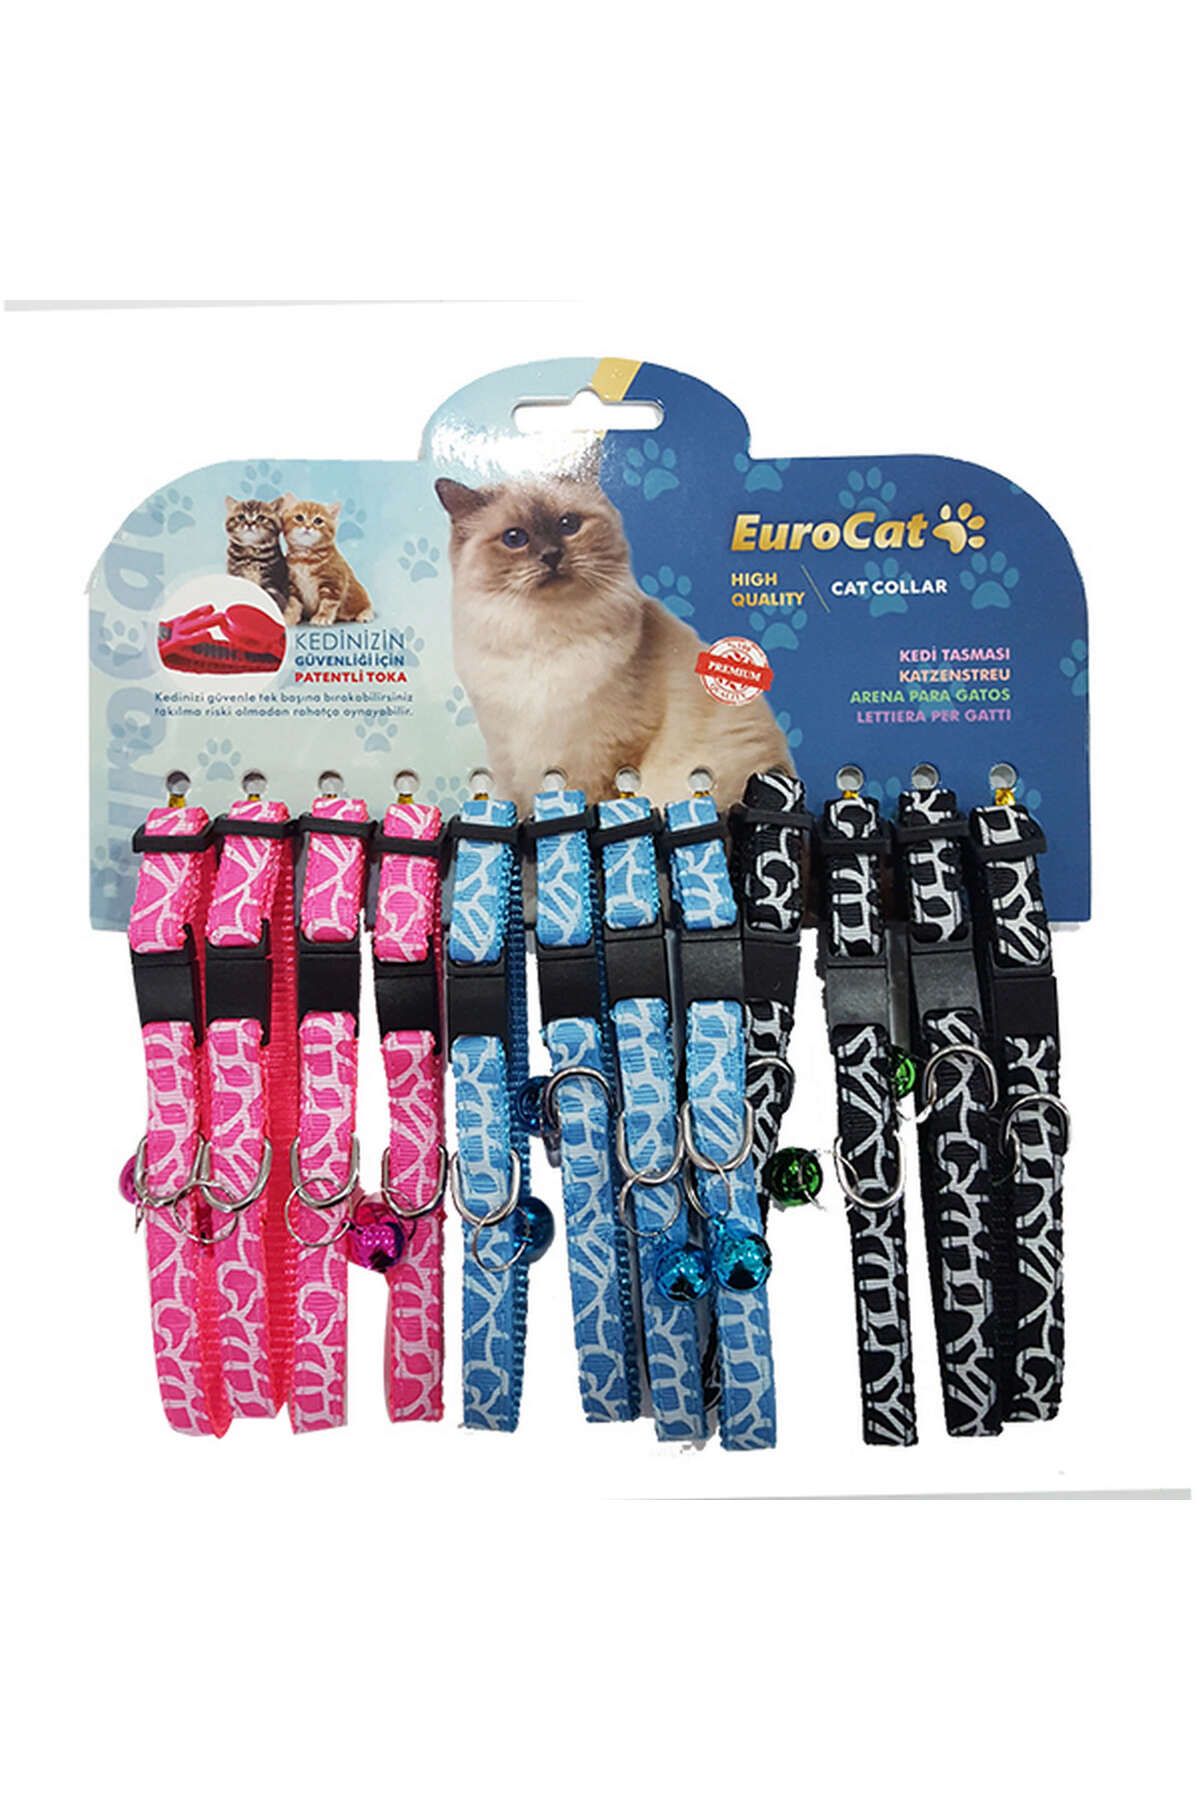 Eurocat Çizgi Desenli Çıngıraklı Kedi Boyun Tasması 12'li 345109